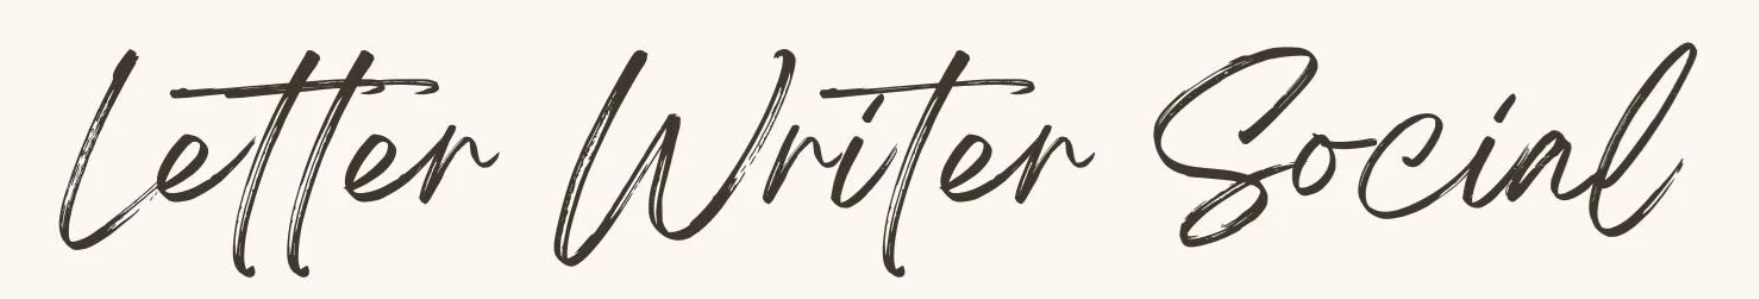 Letter Writer Social